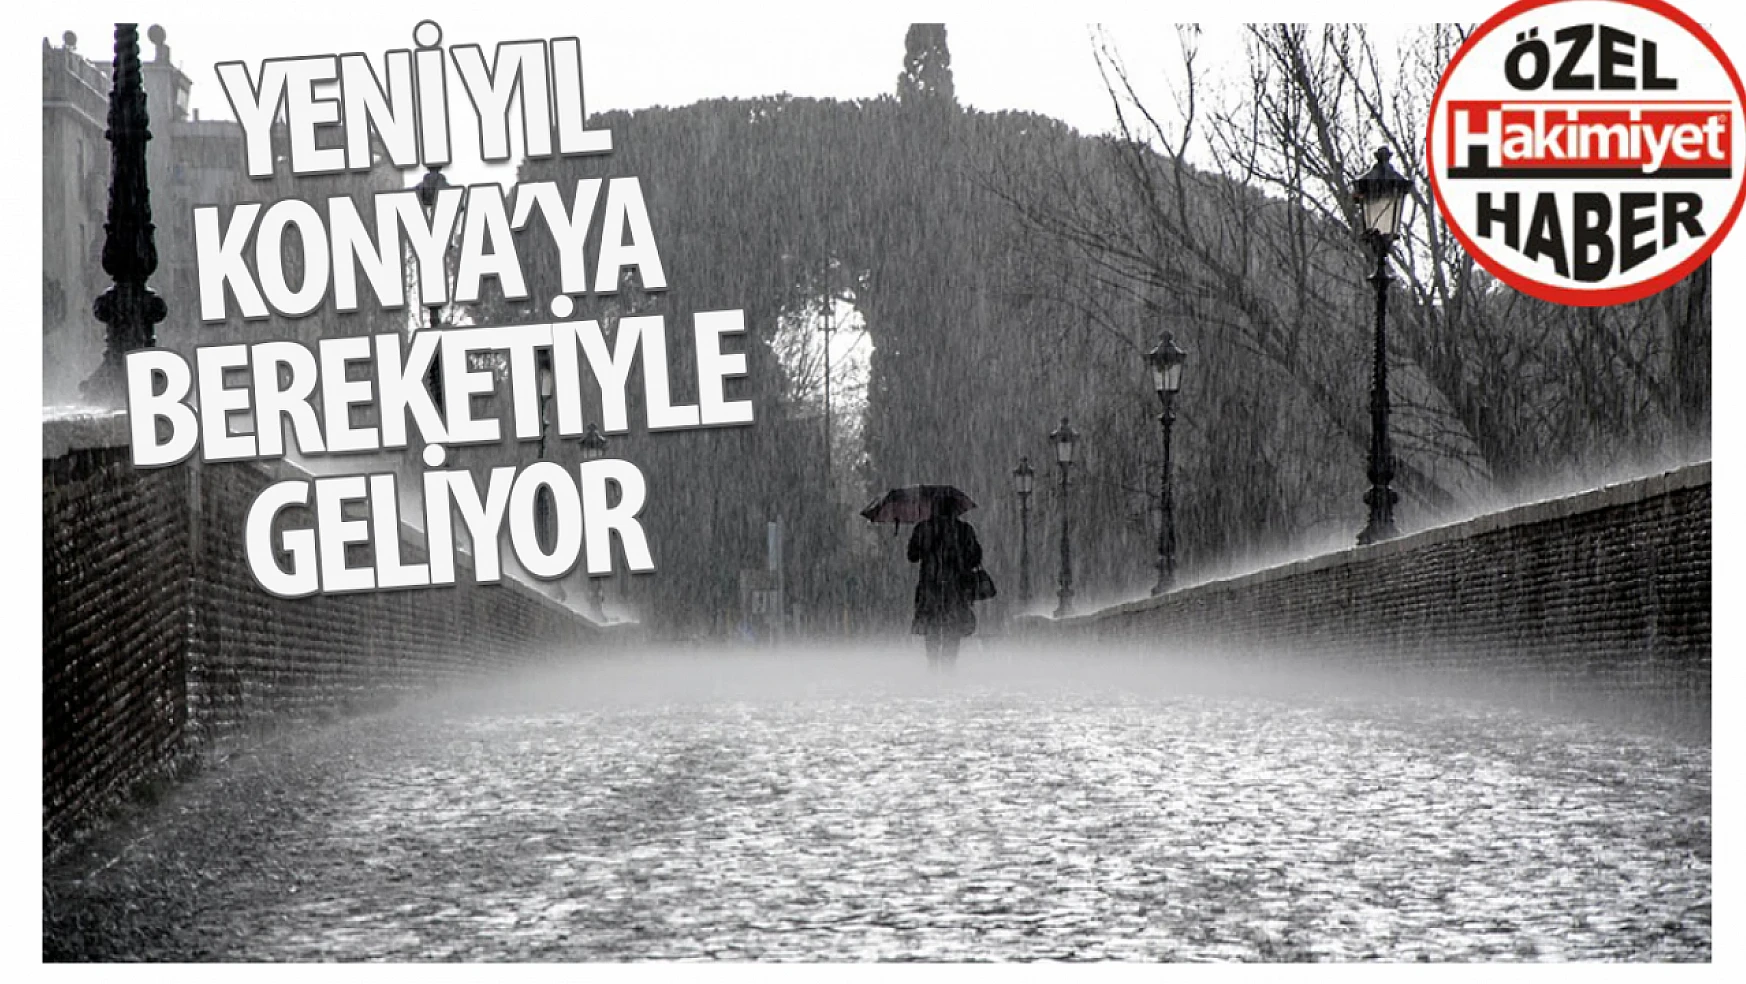 Yeni yıl Konya'ya bereketiyle geliyor: Meteoroloji uyardı 3 gün üste üste yağış var!